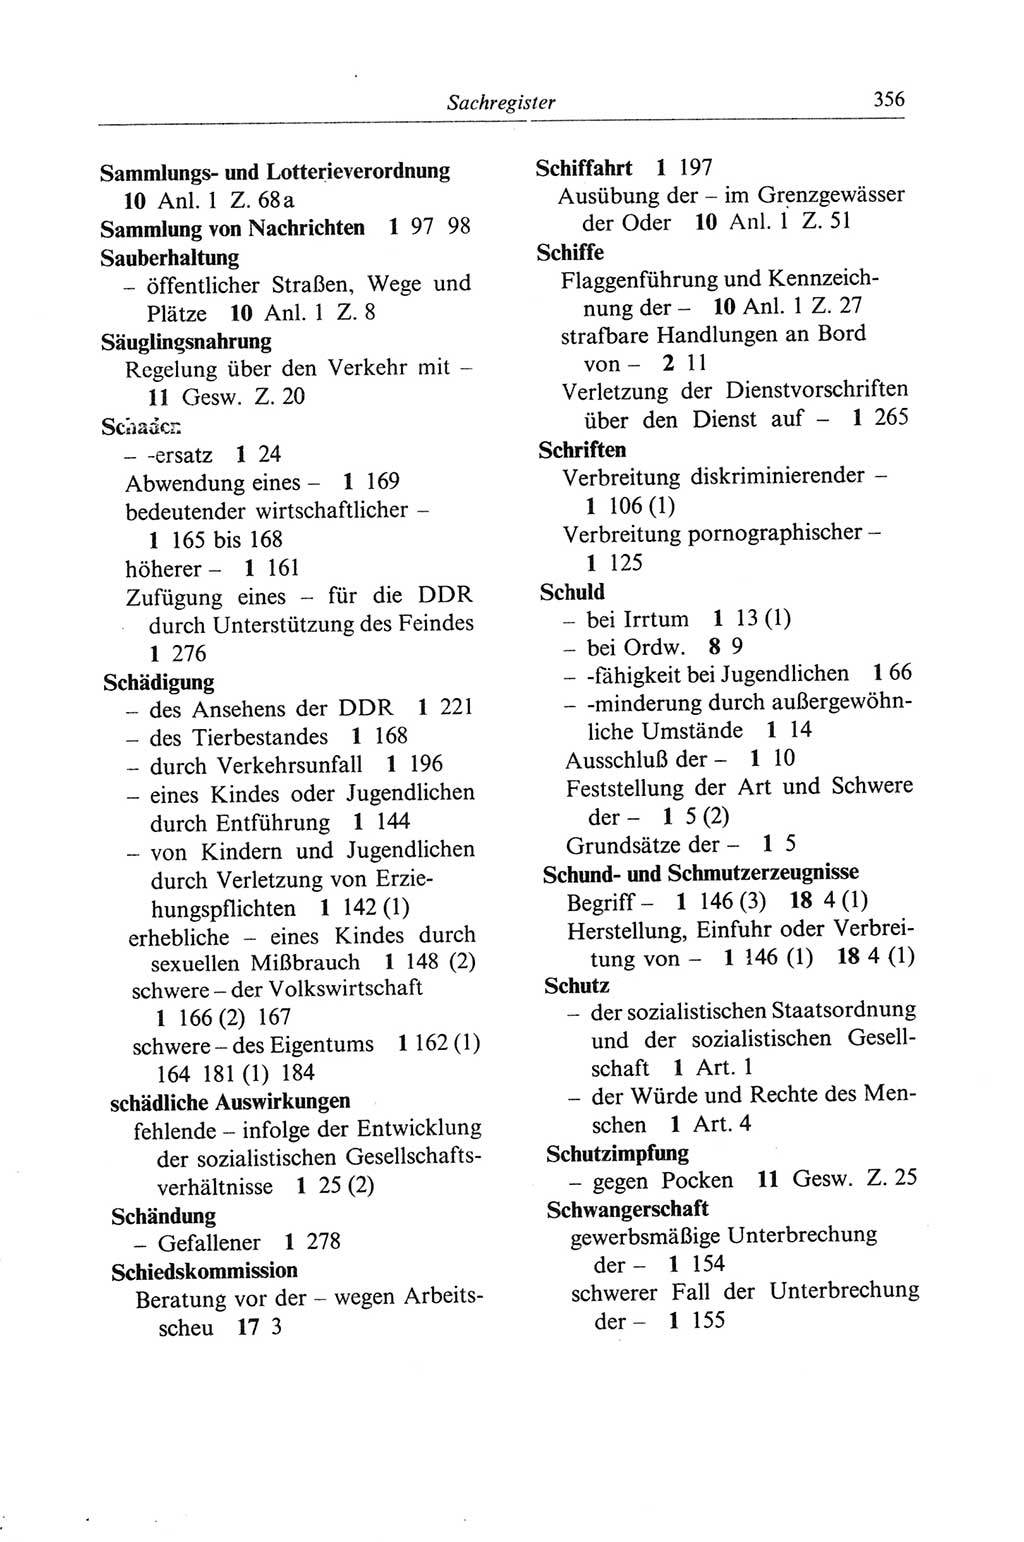 Strafgesetzbuch (StGB) der Deutschen Demokratischen Republik (DDR) und angrenzende Gesetze und Bestimmungen 1968, Seite 356 (StGB Ges. Best. DDR 1968, S. 356)